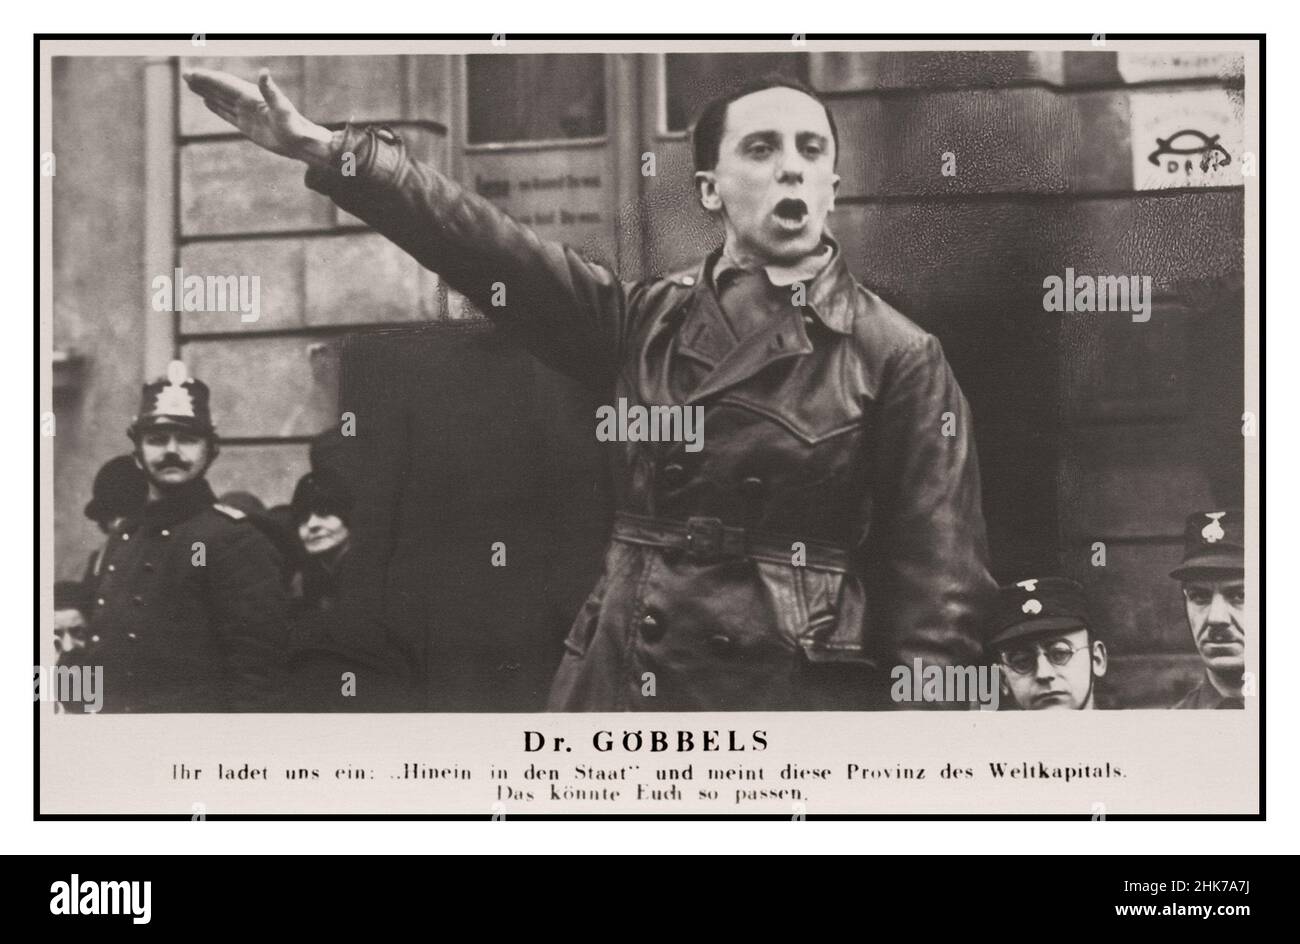 1926 le jeune Dr Joseph Goebbels, au cours d'un discours, a nommé Gauleiter (chef du parti) de la région de Berlin NSDAP en 1926, une position d'influence considérable.Là, il s'est activement impliqué dans l'organisation et la provocation de la violence de rue contre les Juifs et les opposants politiques.Image de Heinrich Hoffmann (1885-1957) Allemagne nazie Banque D'Images